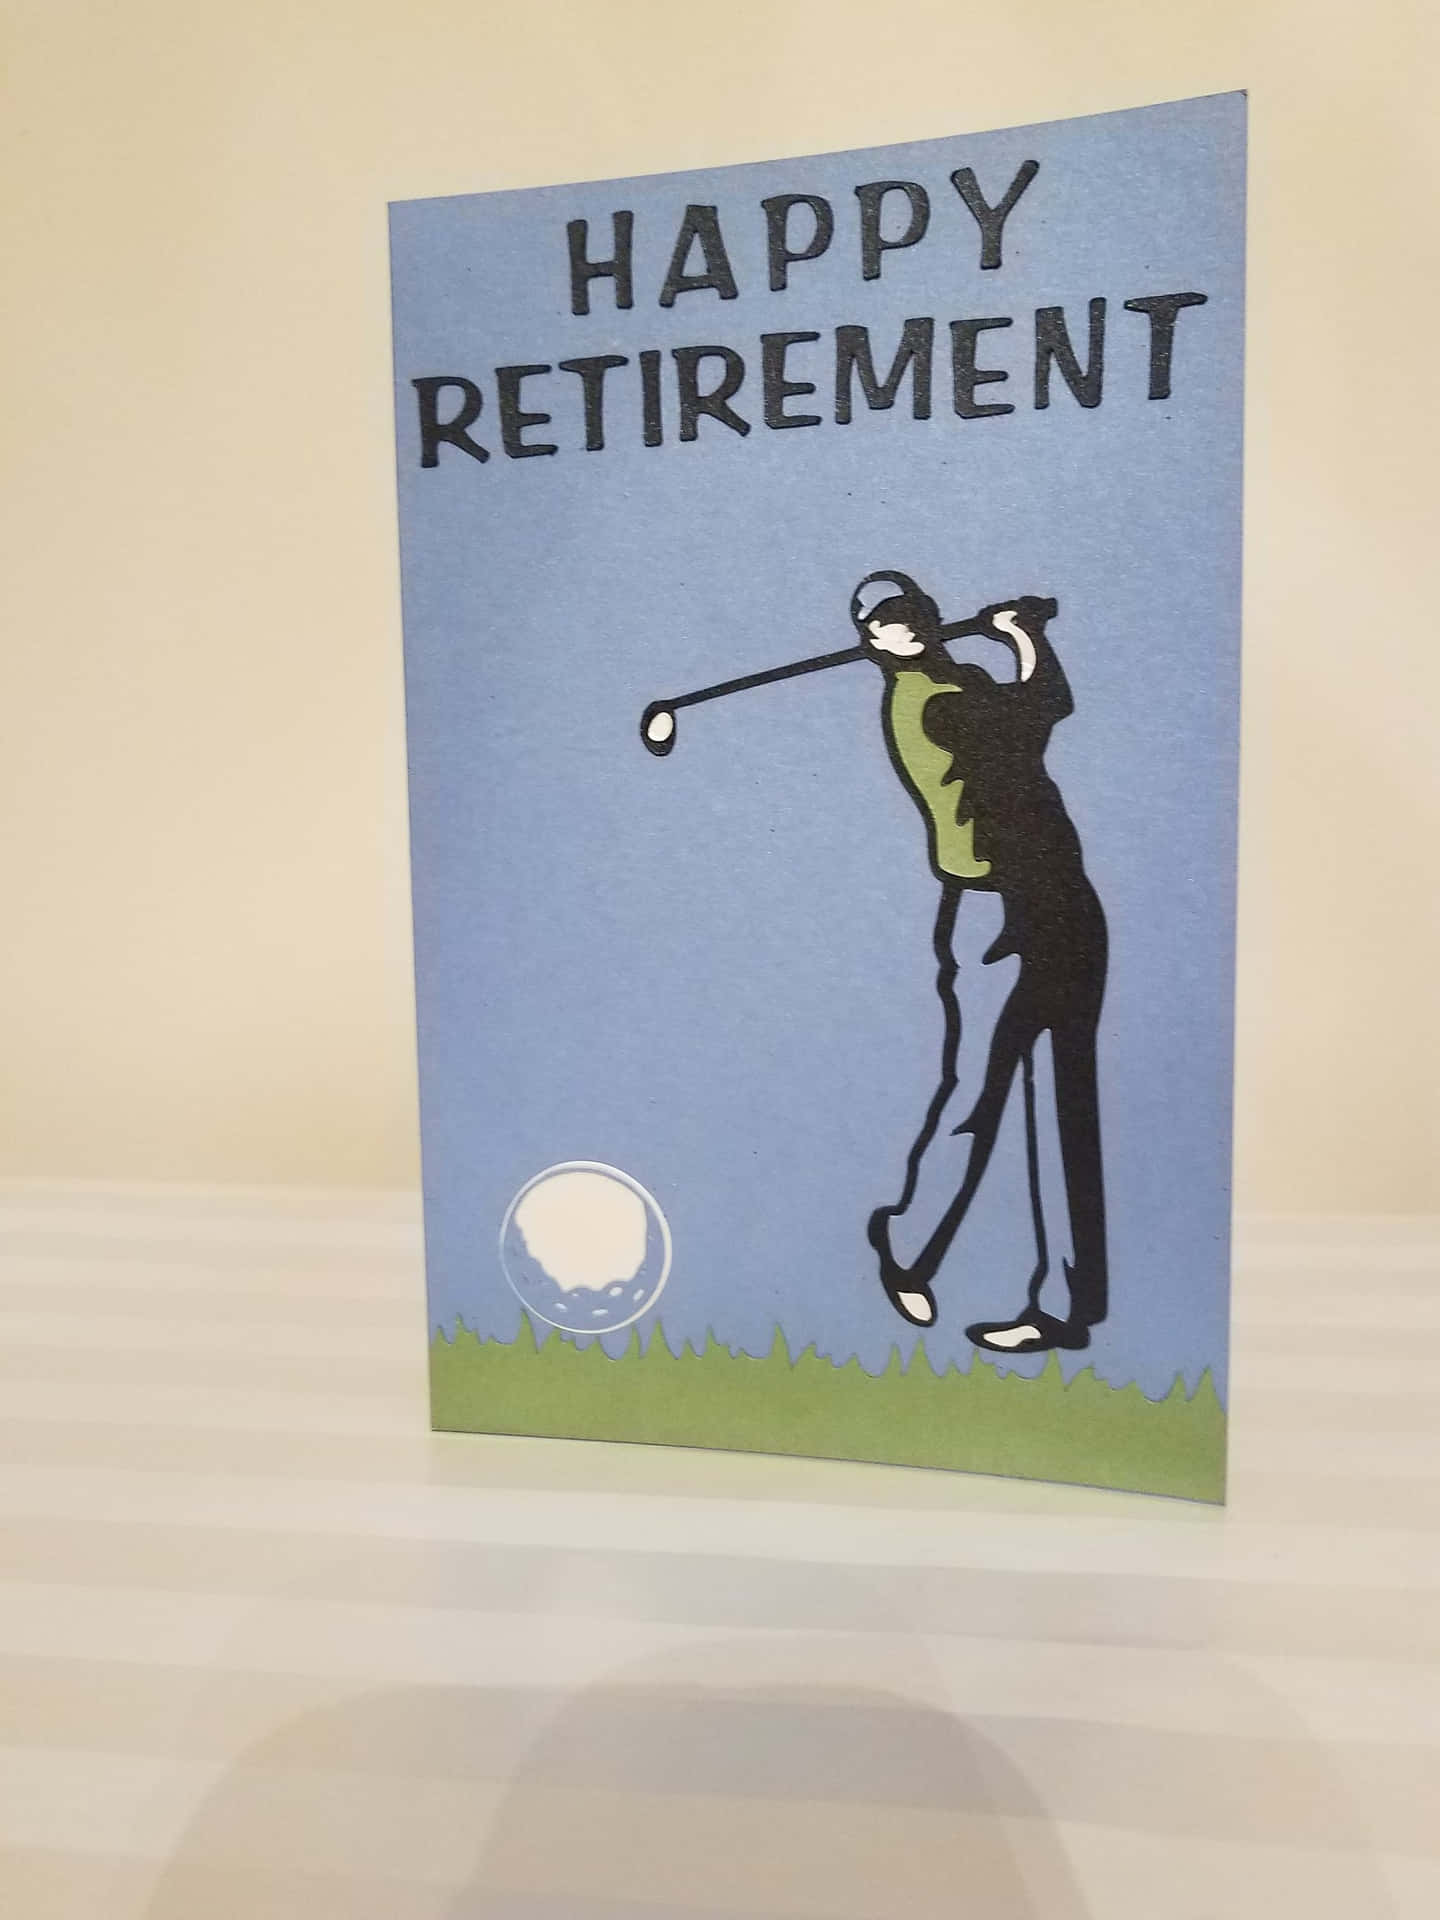 happy retirement golf